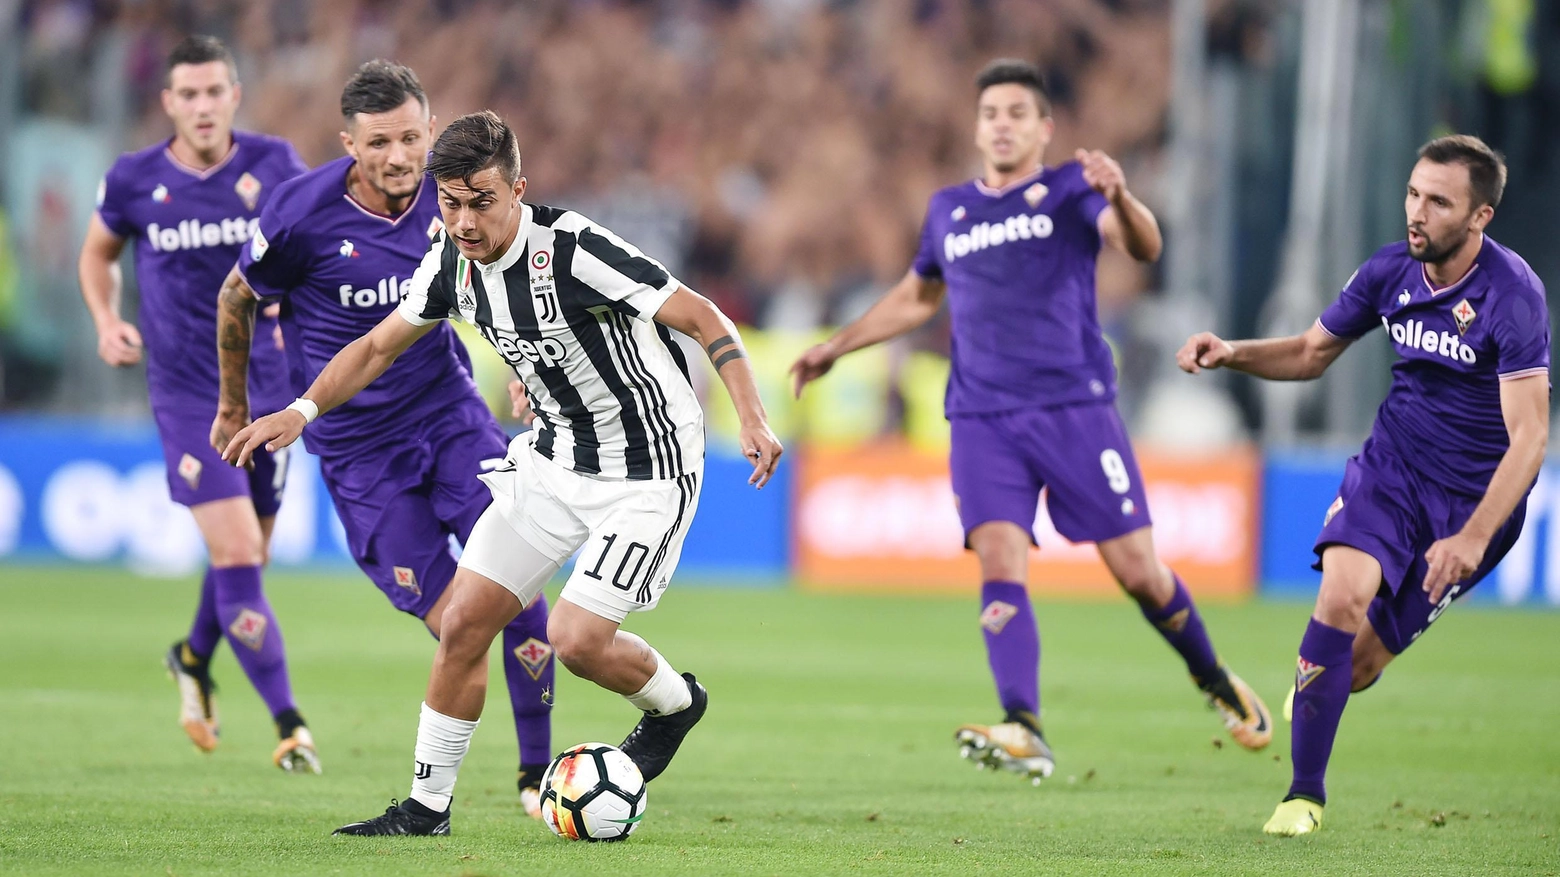 Una delle ultime sfide fra Juve e Fiorentina disputate a Torino